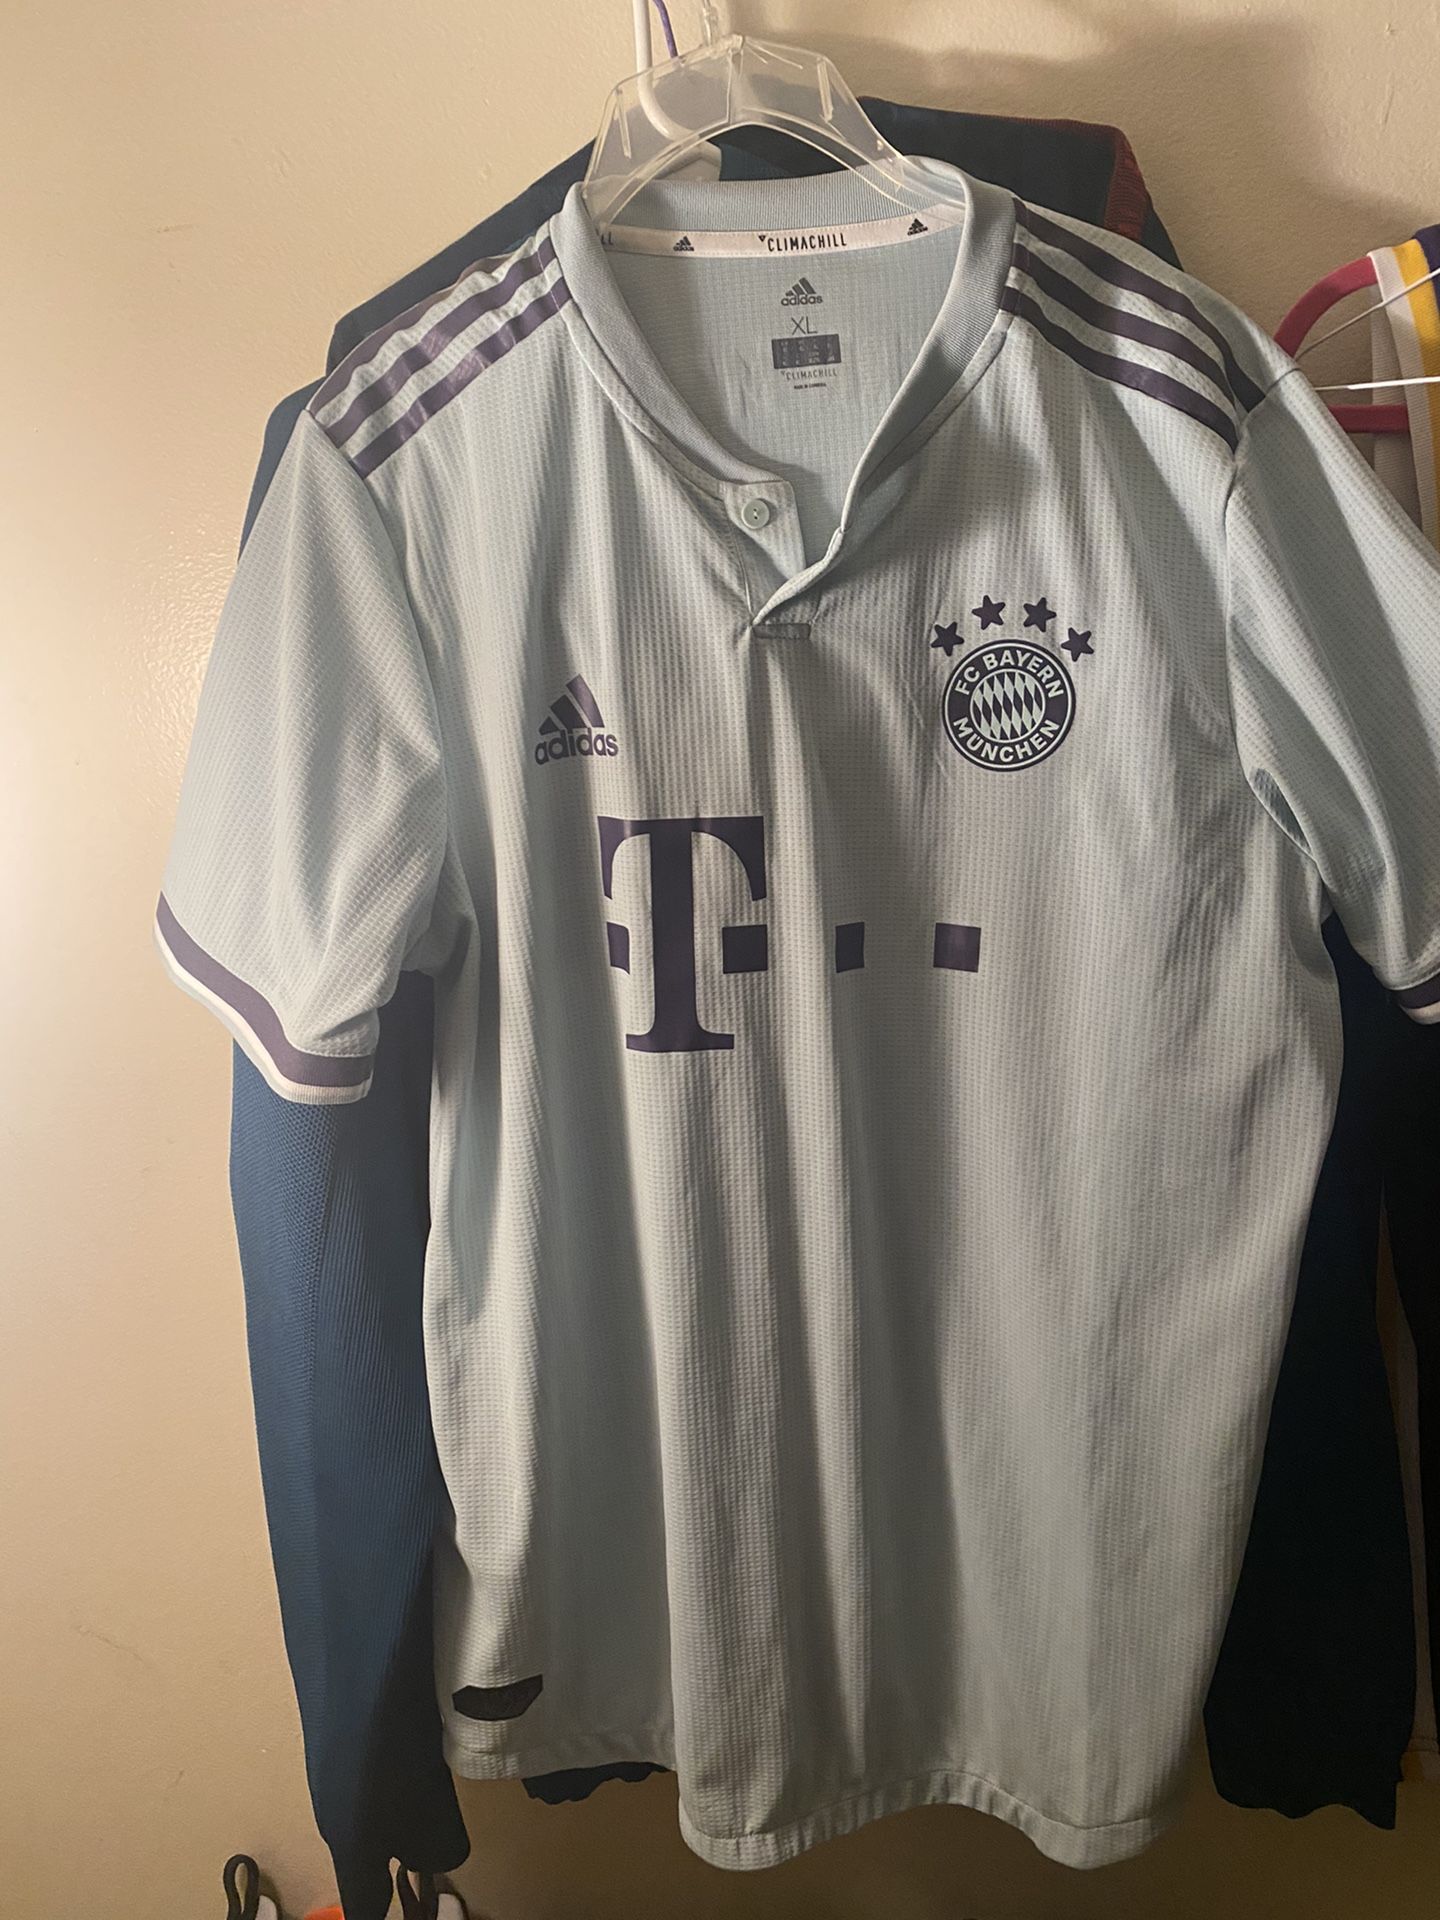 Adidas soccer jersey Bayern Munich